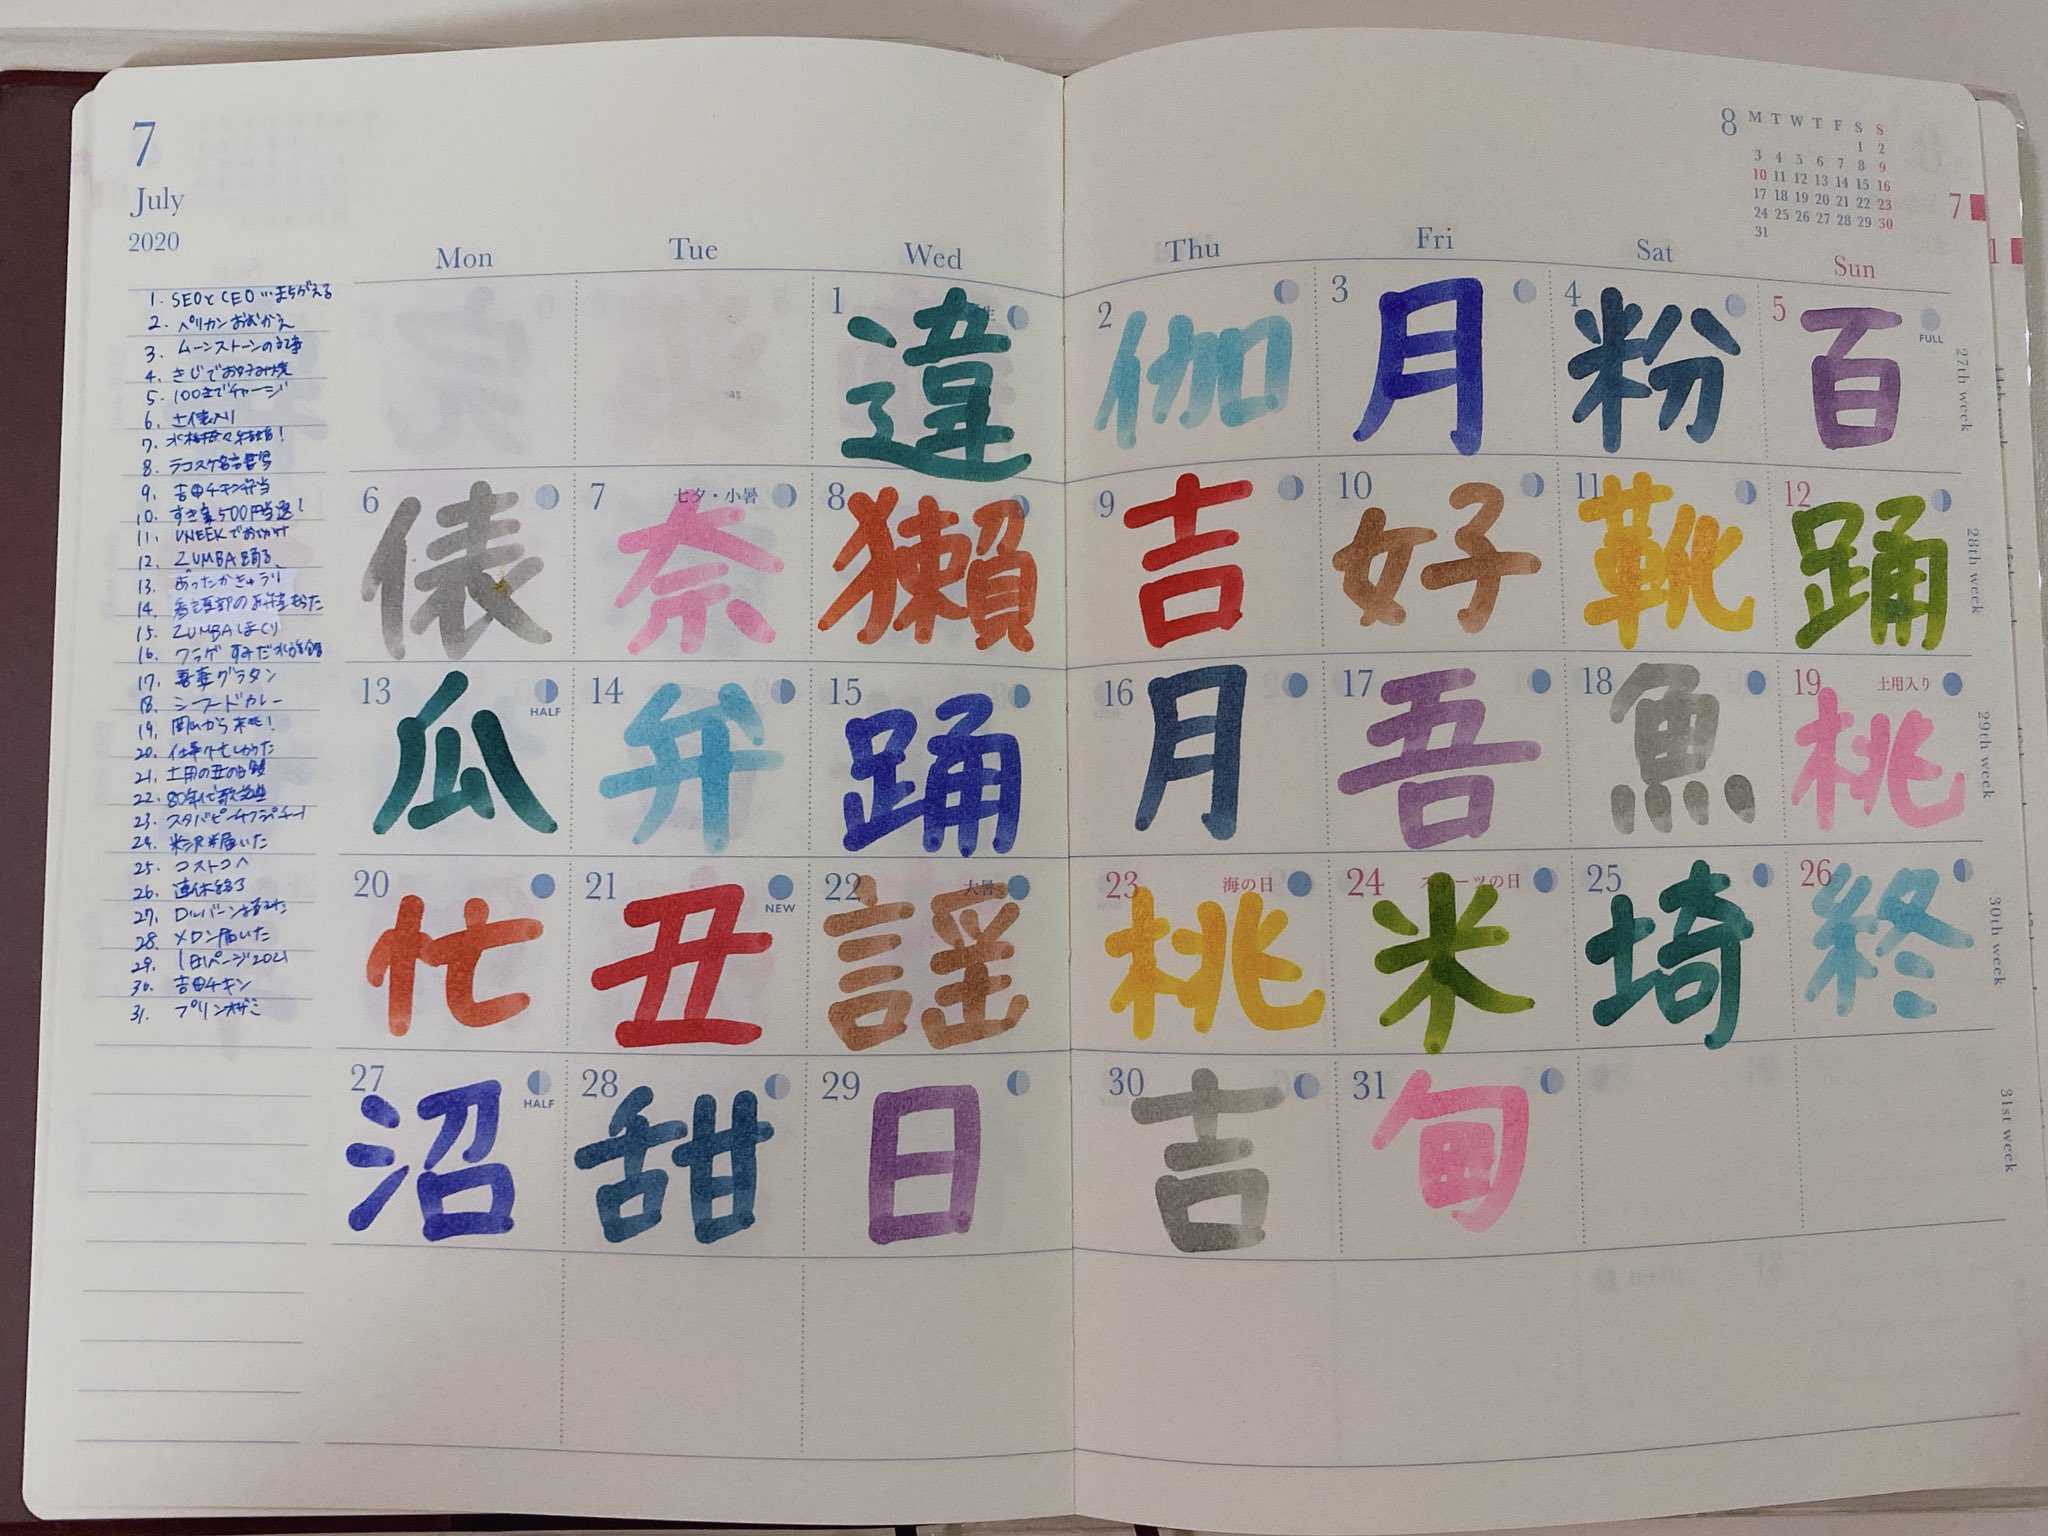 も W い 6月の 漢字日記 Noteの写真日記のおかげで直感で書くことが出来た6月の漢字日記 今月から続けられるかなぁ T Co G8yohqyxvo Twitter